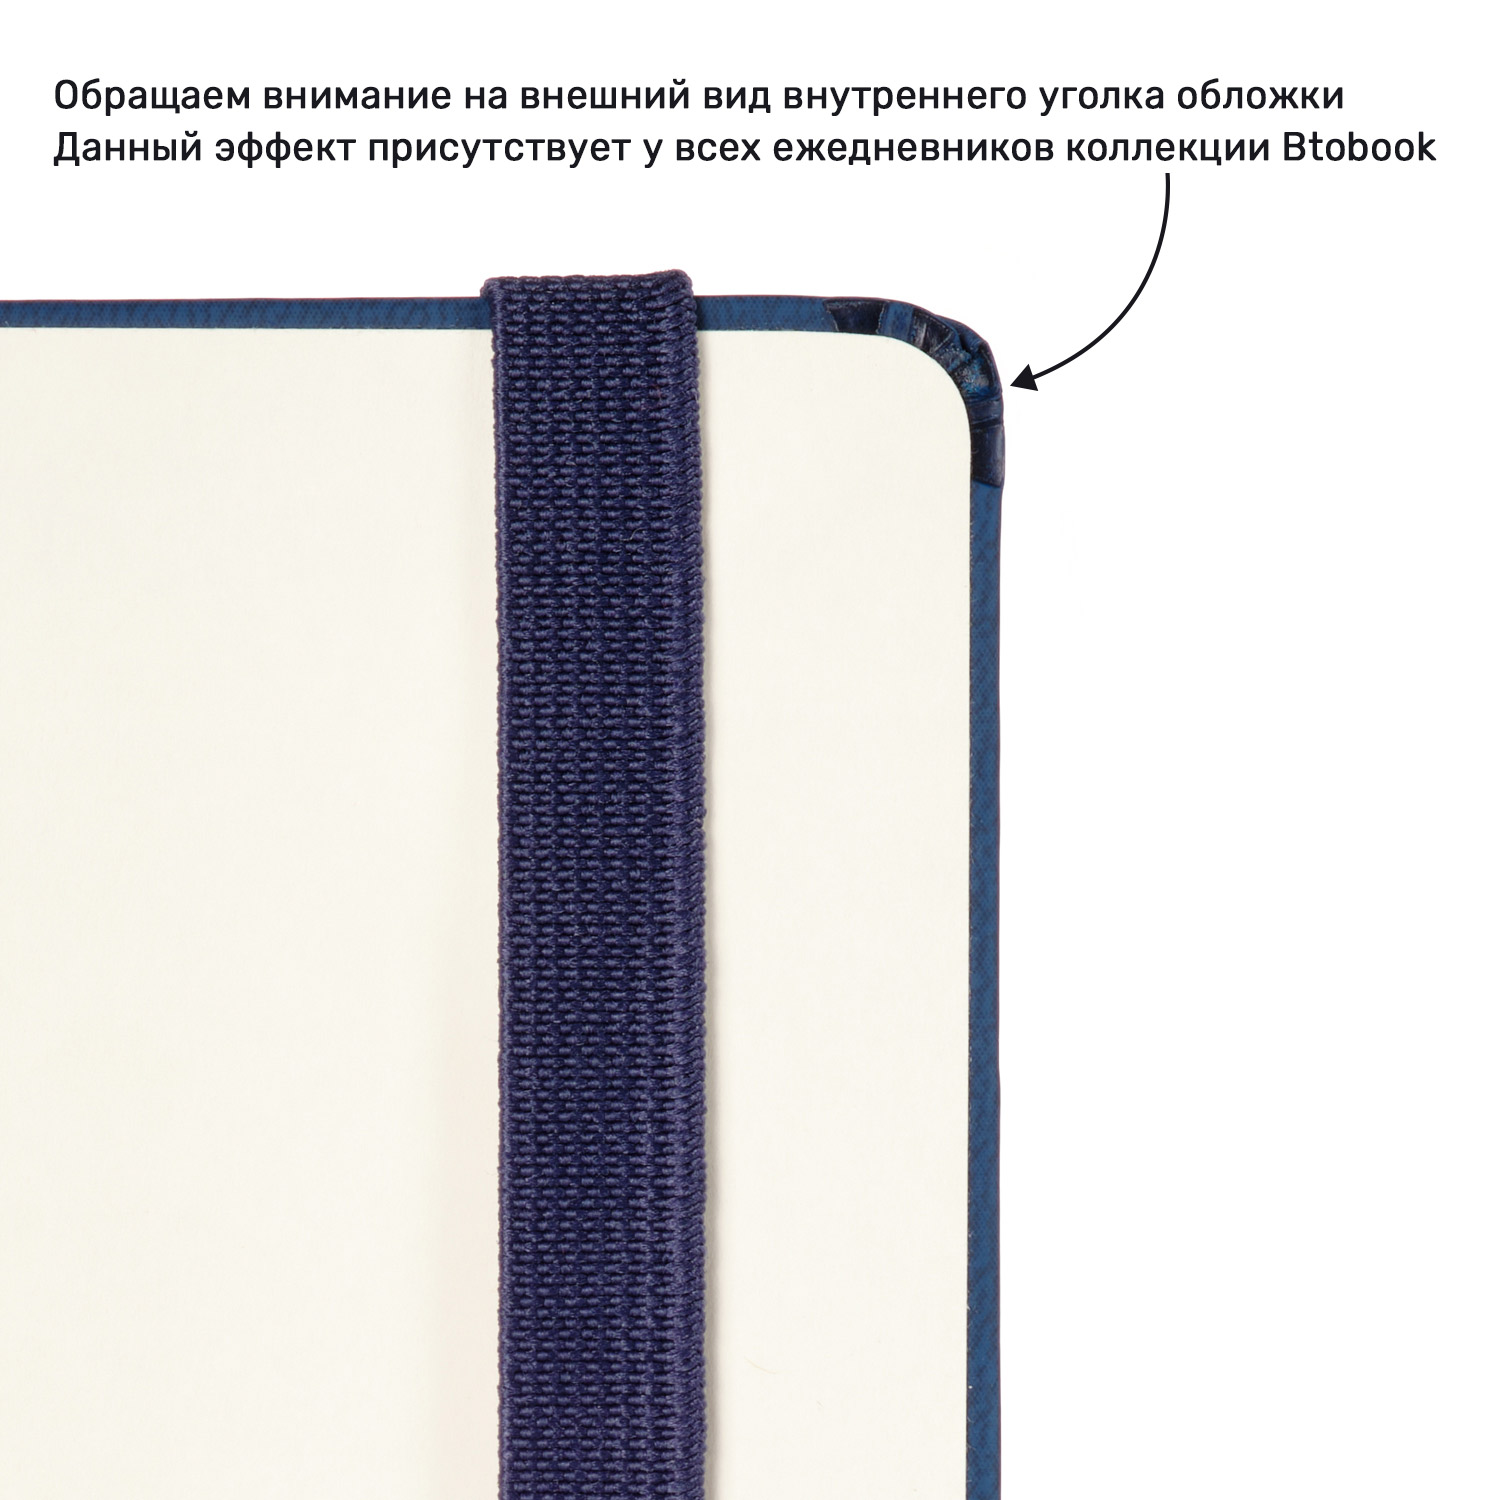 Ежедневник Marseille soft touch BtoBook недатированный, синий (без упаковки, без стикера)